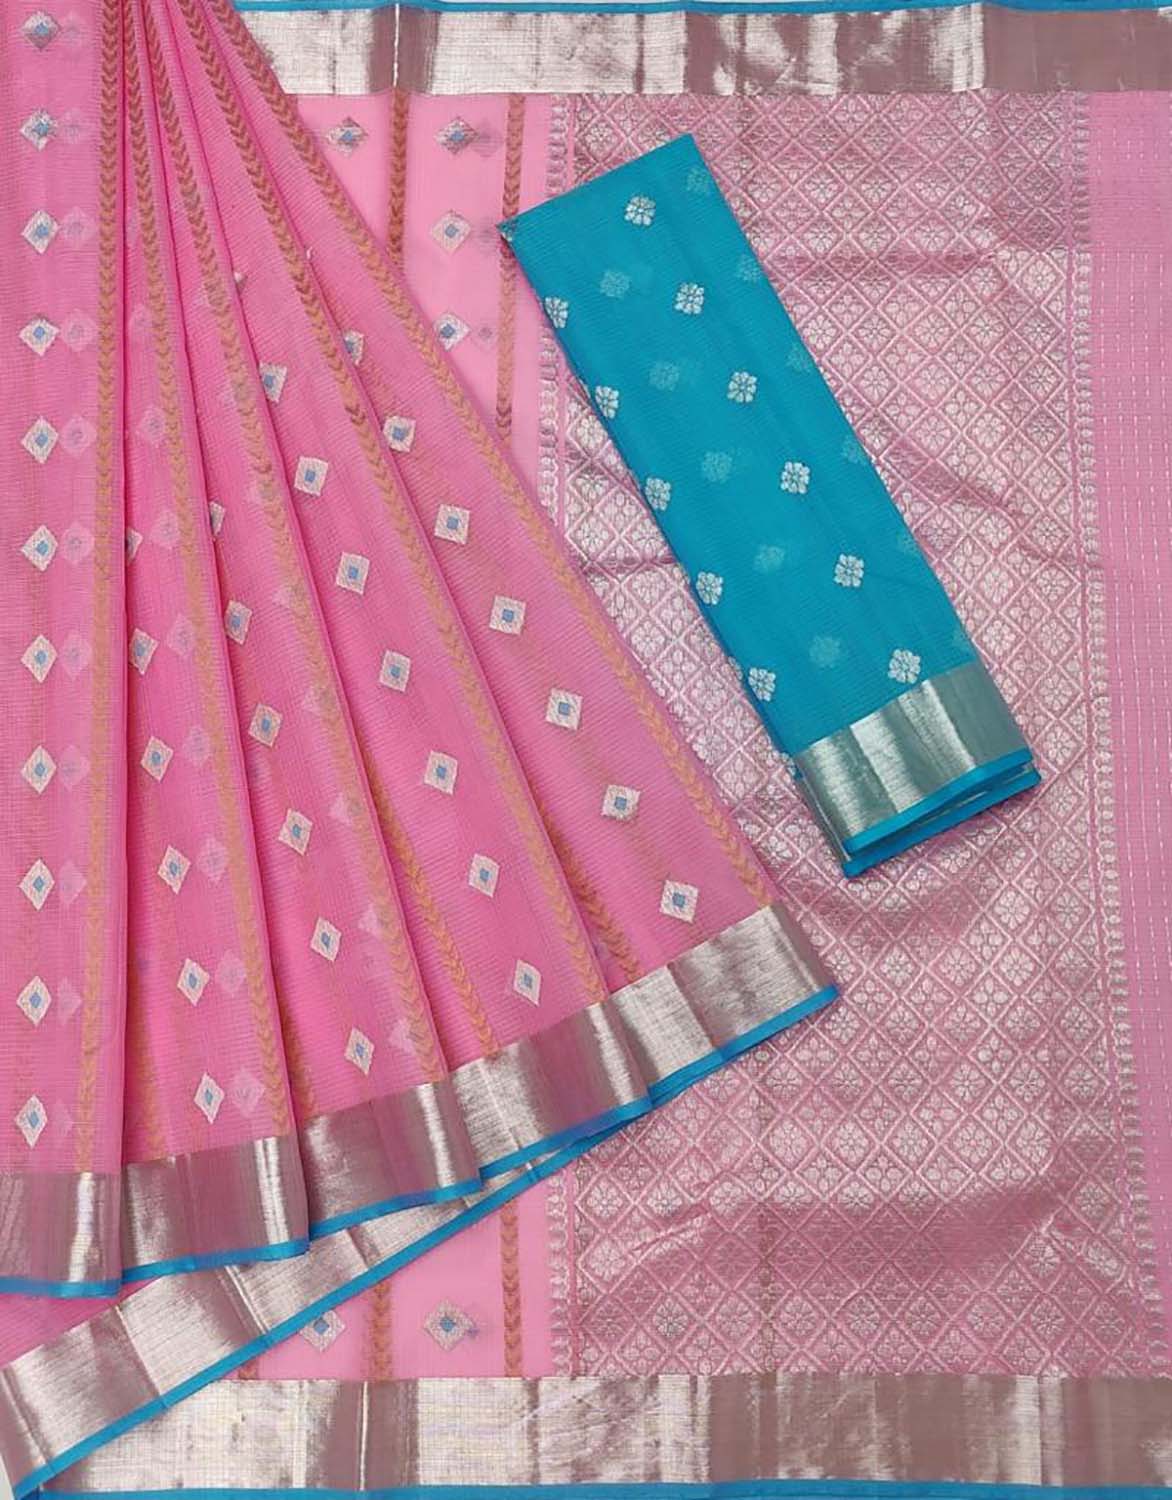 Stunning Pink Handloom Kota Doria Saree with Real Zari Detailing